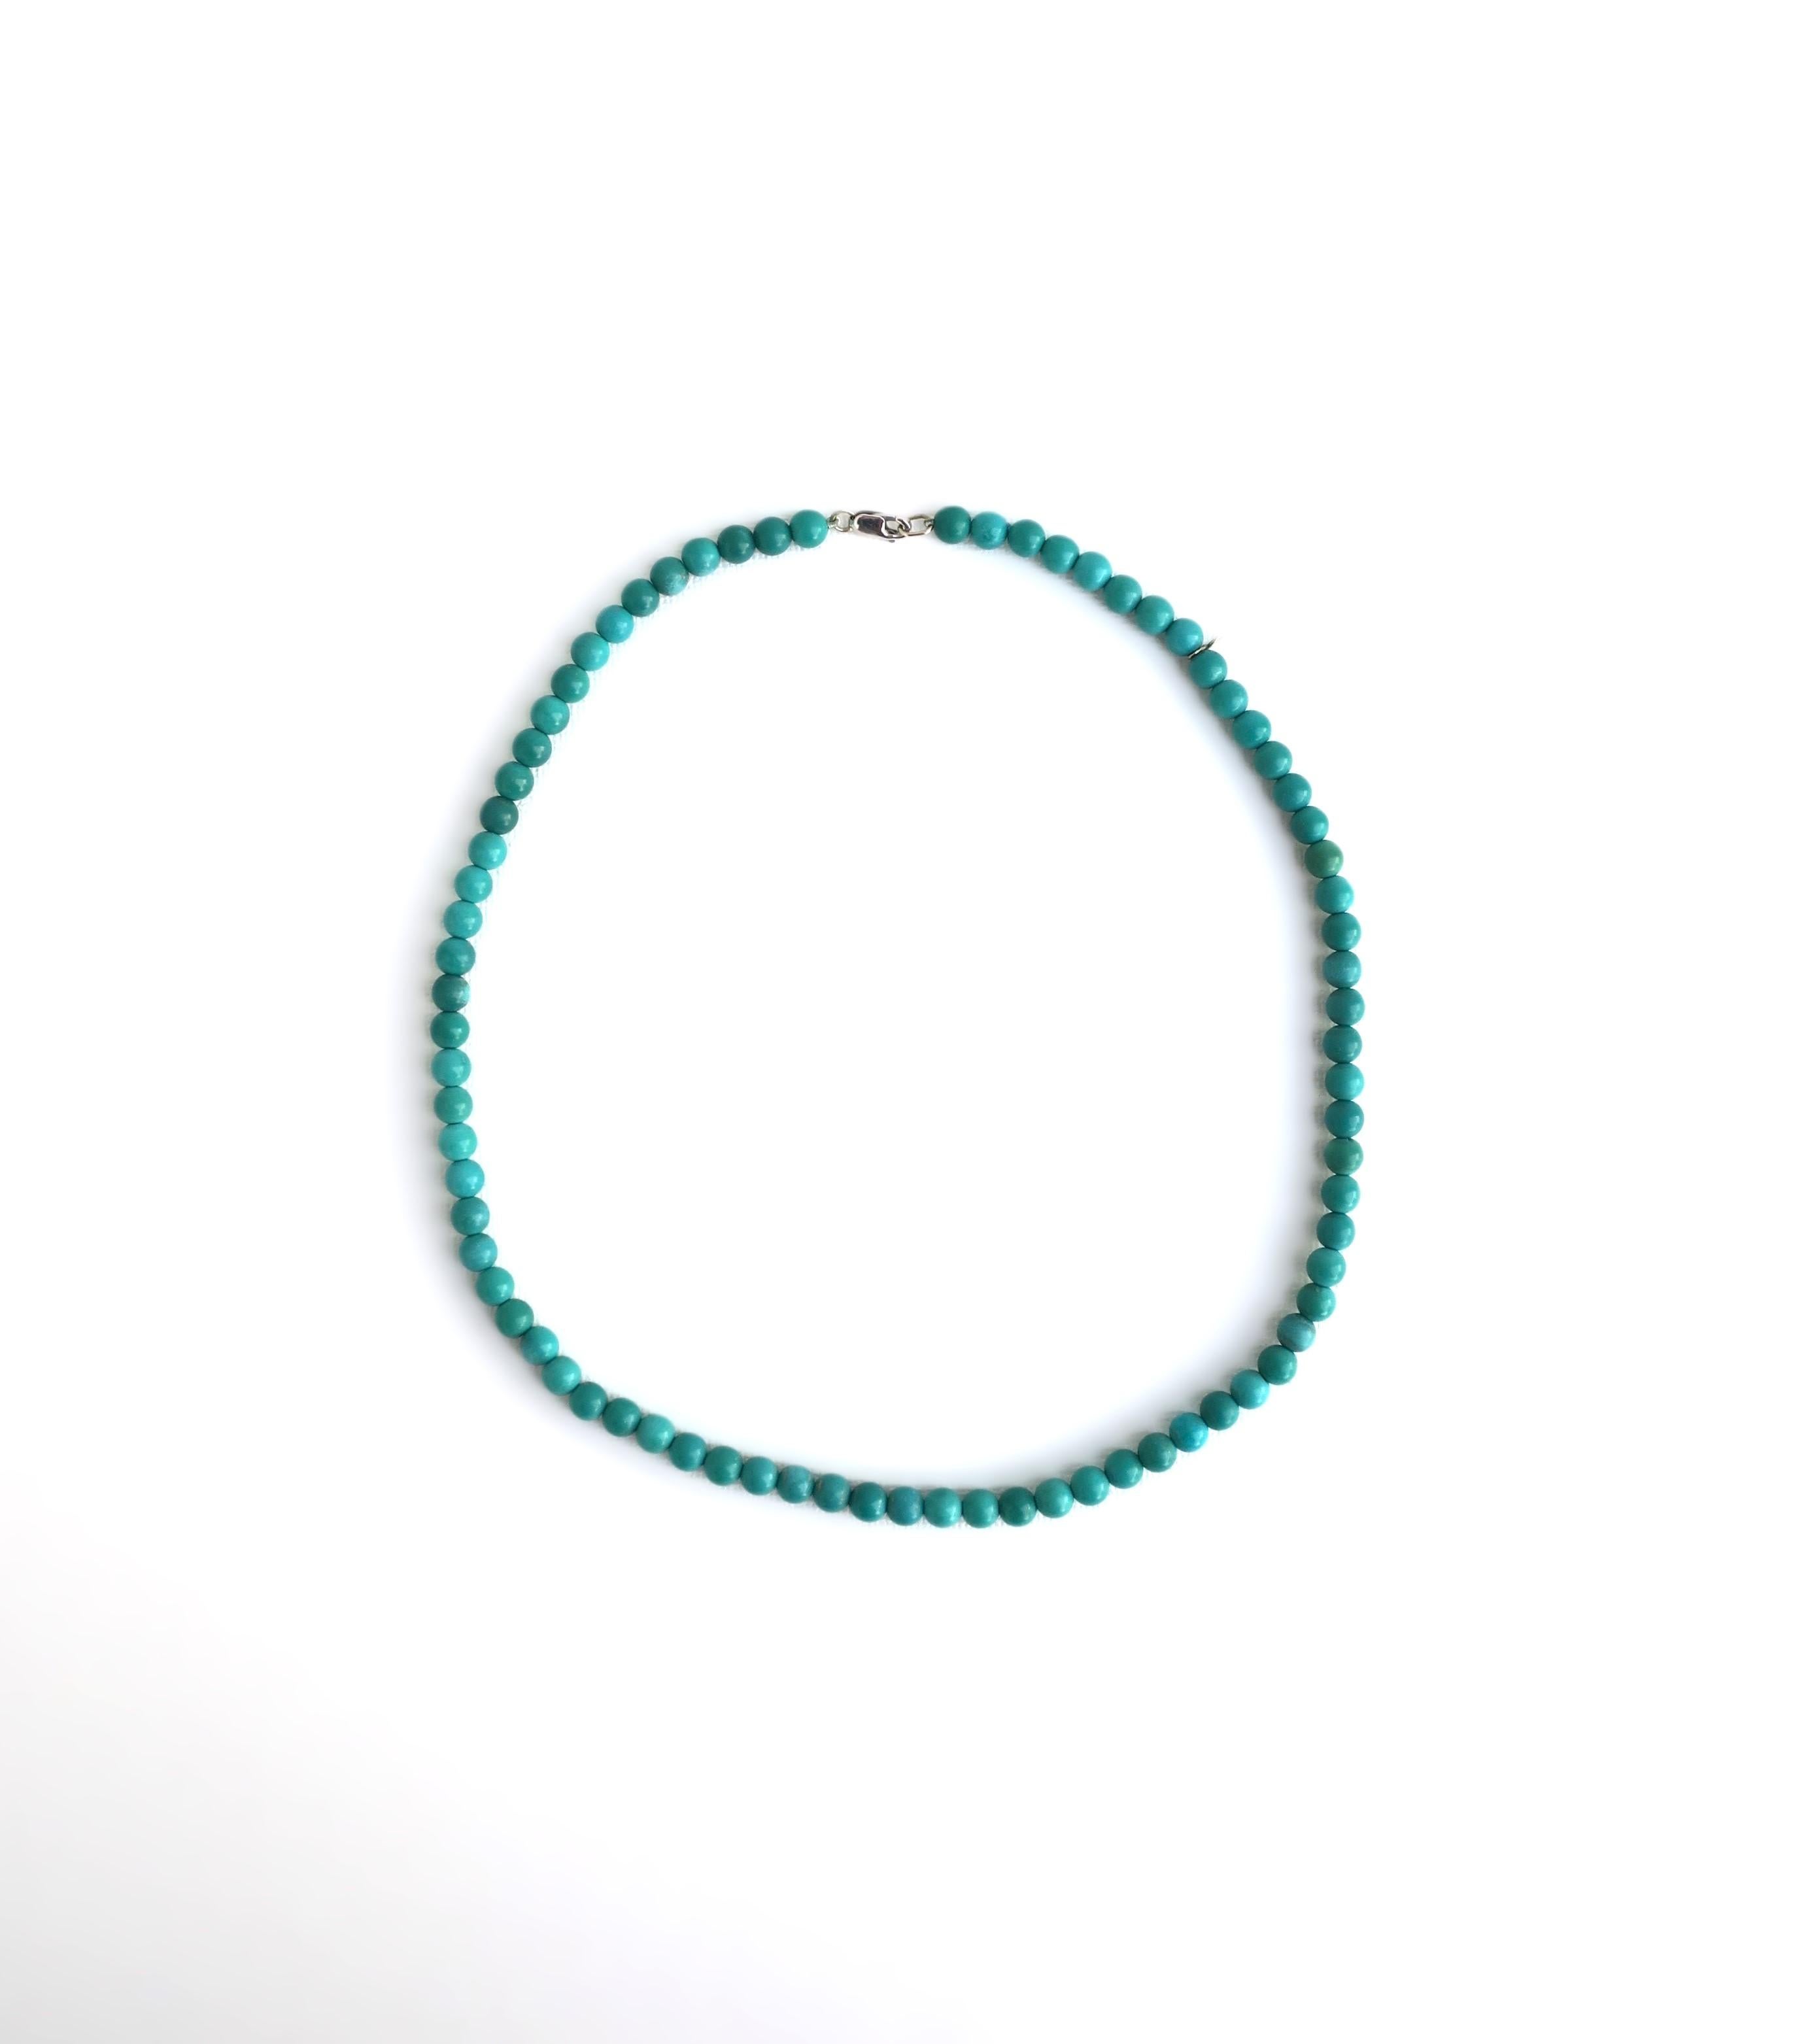 Un magnifique et chic collier de perles en pierre bleu turquoise et un collier ras de cou en un seul collier. Le collier est présenté dans les deux longueurs. Le collier est magnifique en tant que pièce indépendante, mais il peut également être